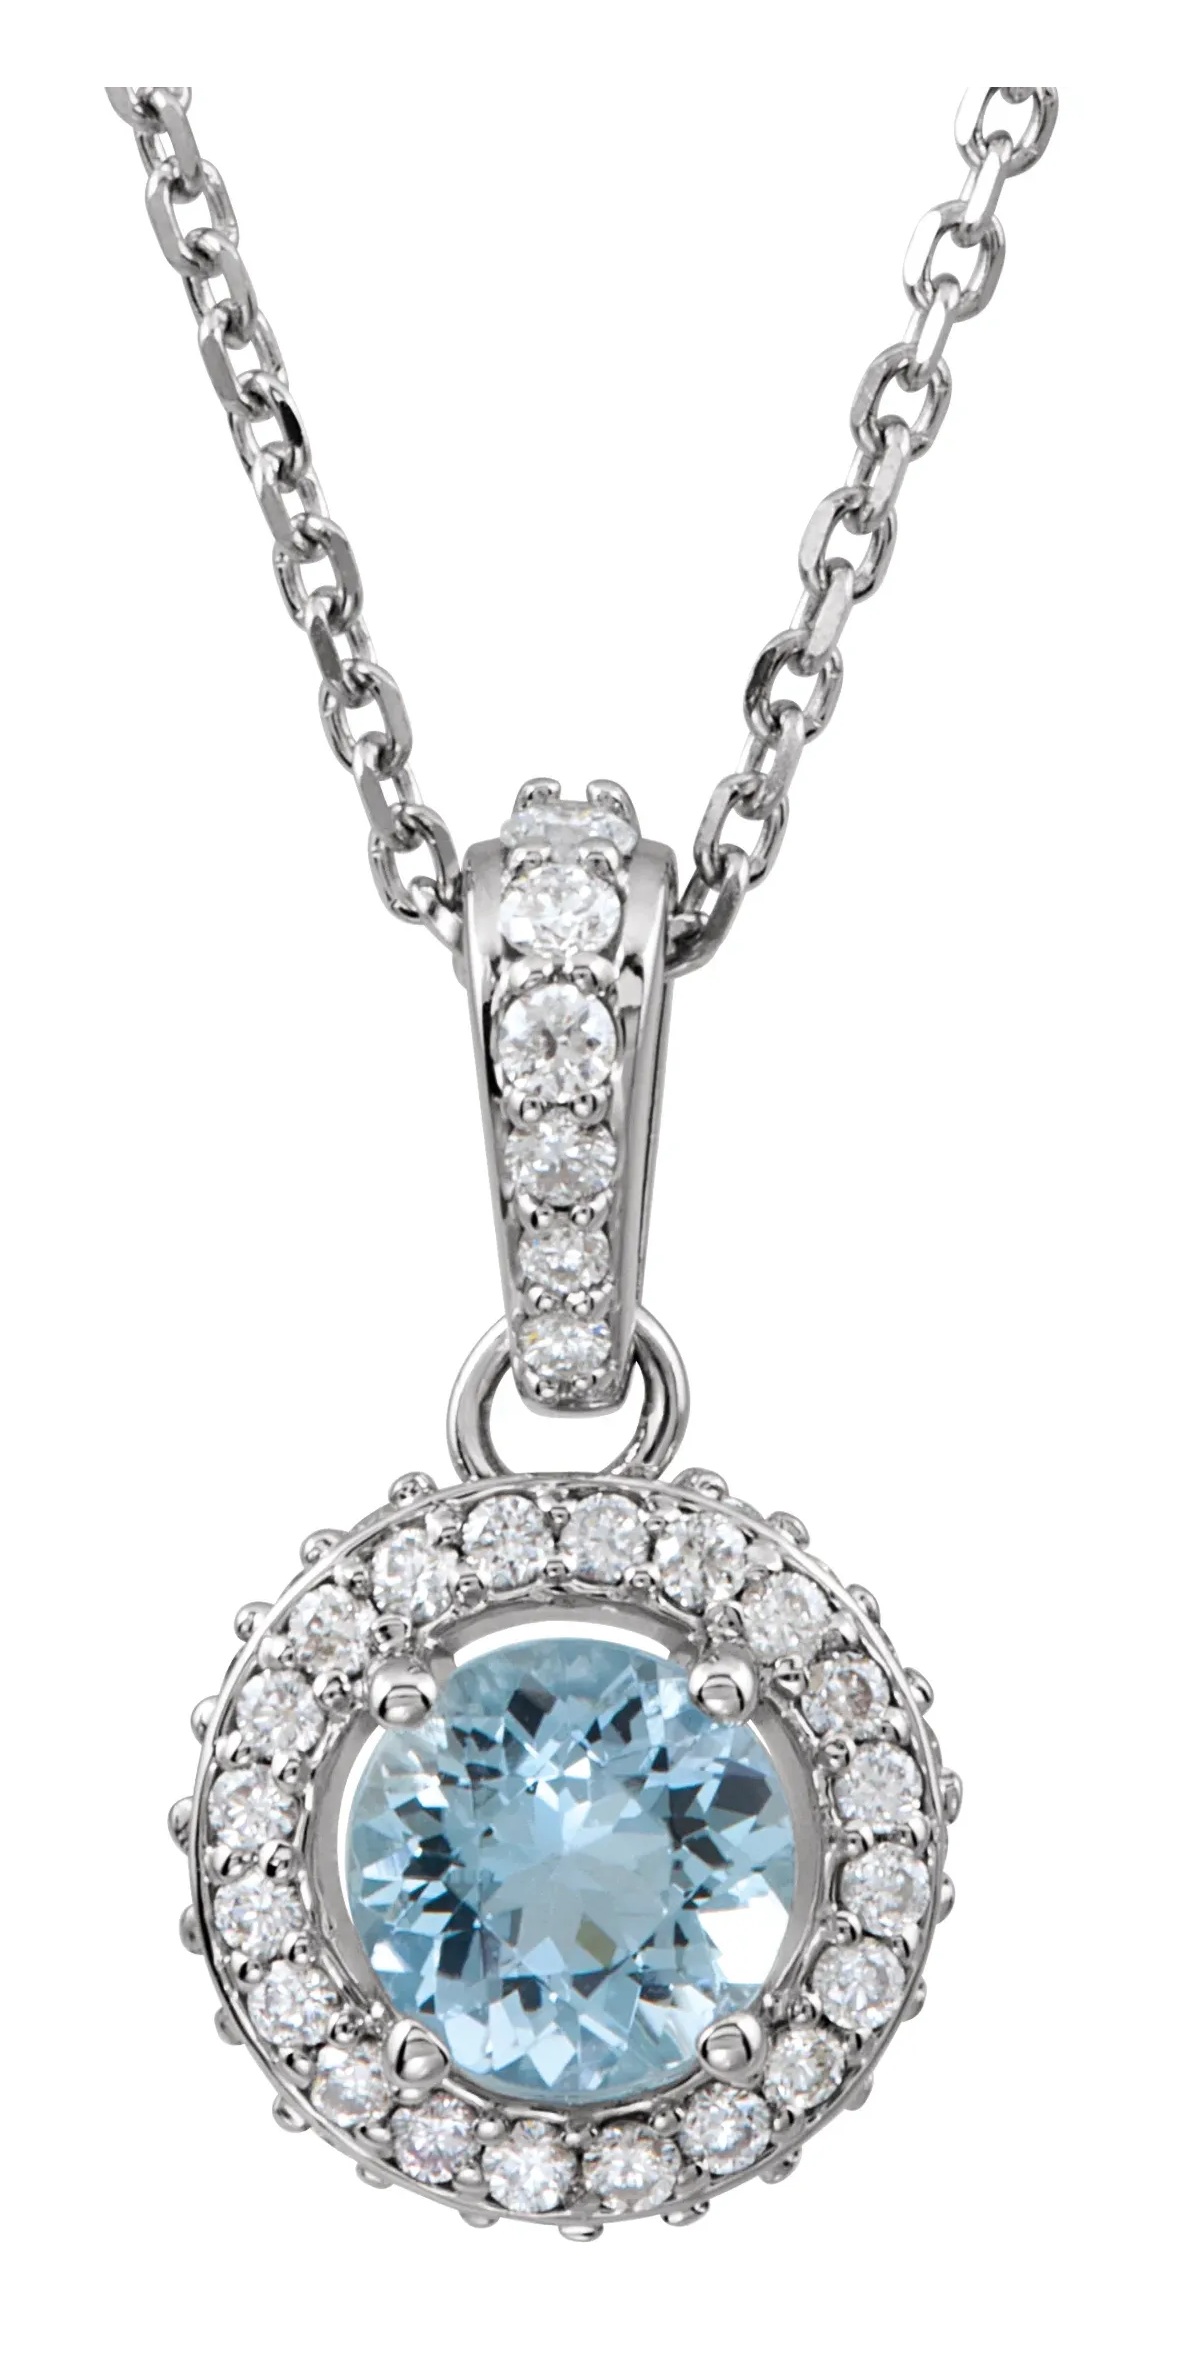 Aquamarine and Diamond Entourage 14k White Gold Pendant Necklace, 18